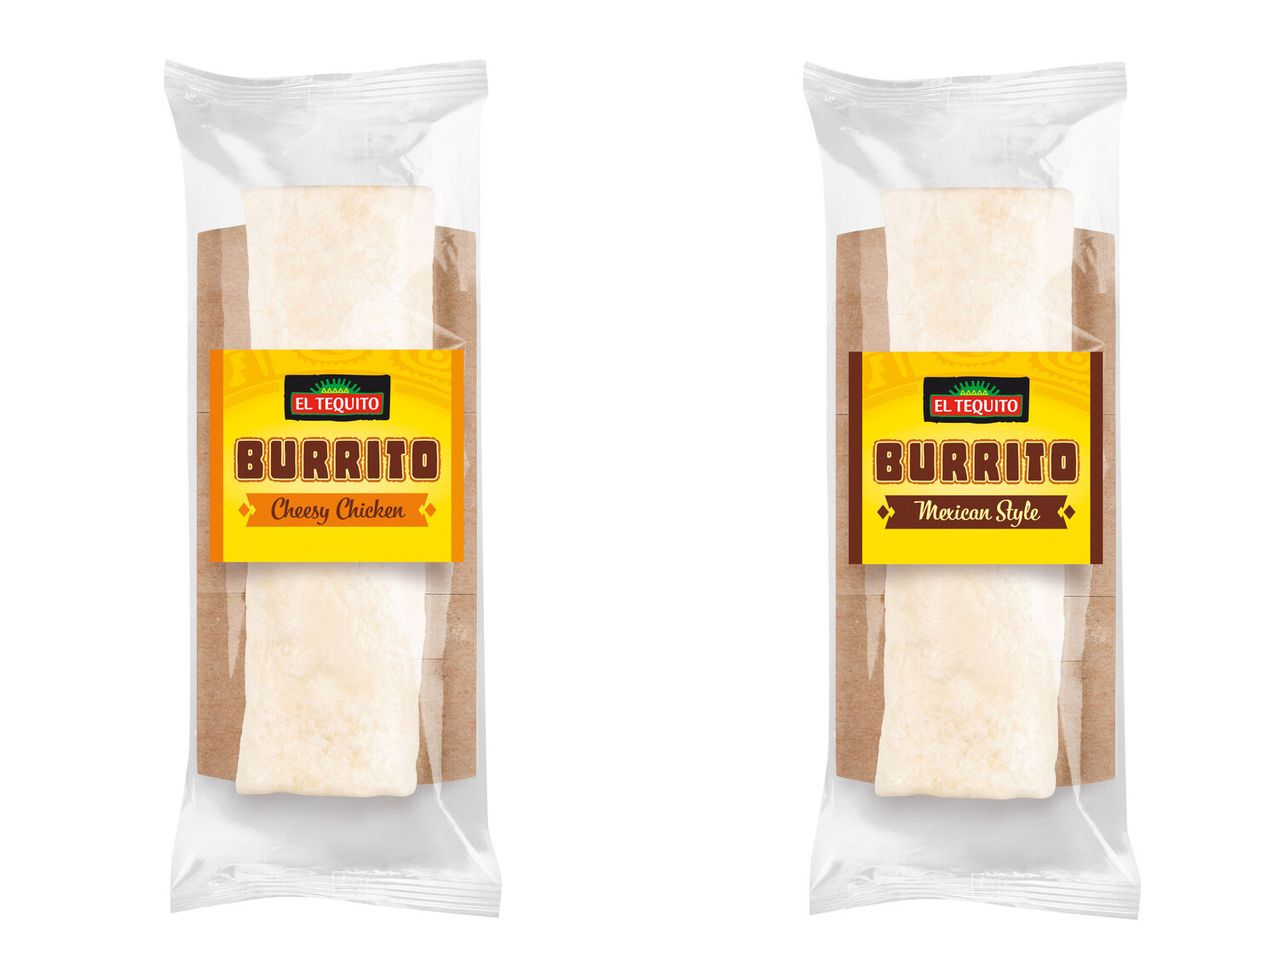 Burrito El Tequito